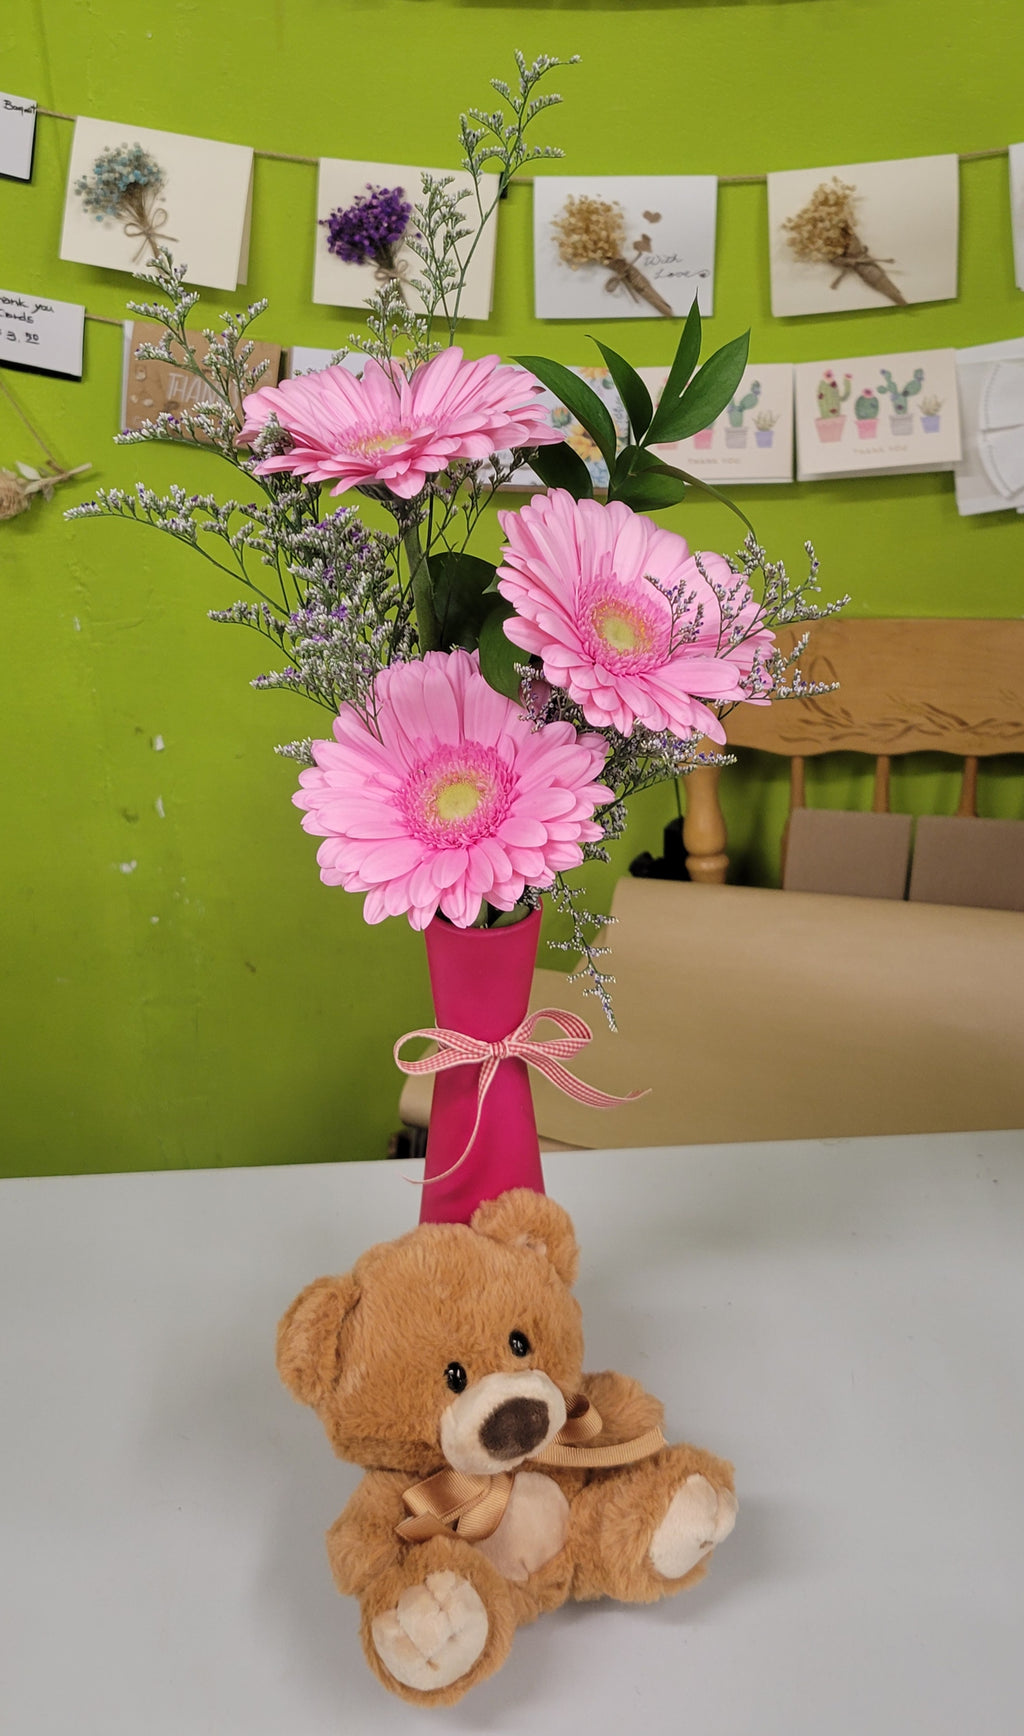 HC-007 Pink daisy vase with teddy bear